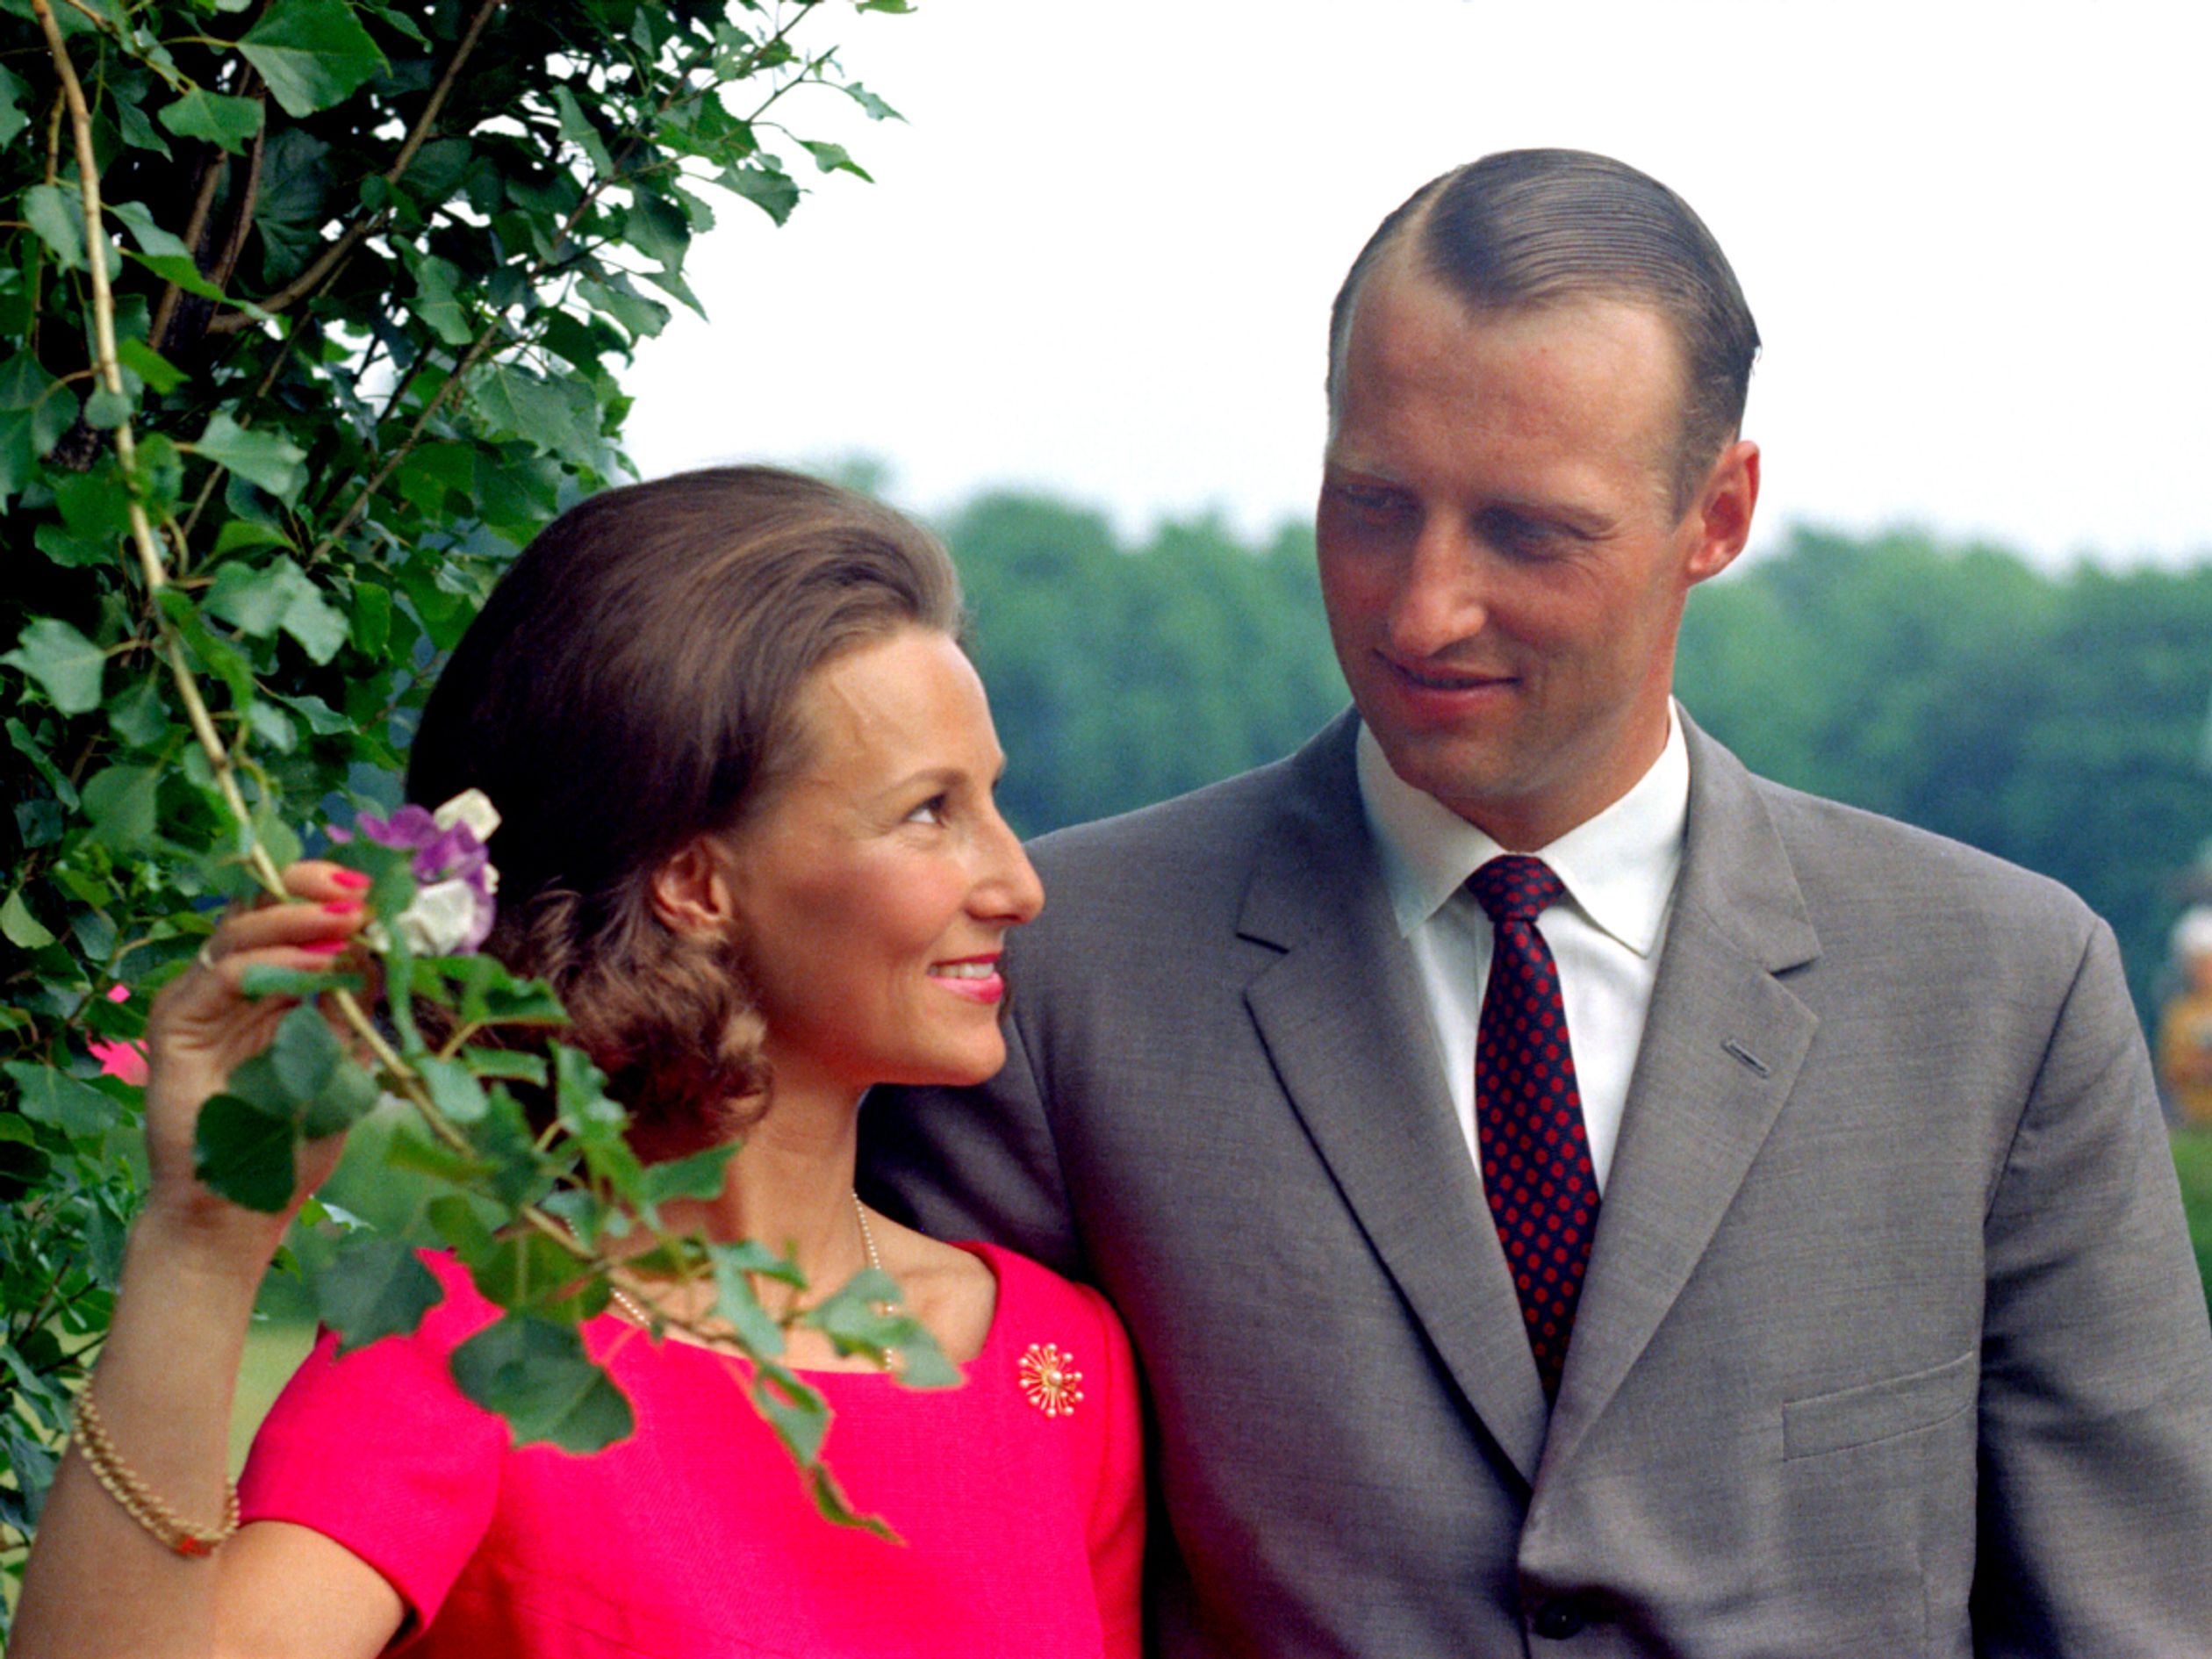 19 maart 1968 - De verloving van Harald en Sonja werd bekend gemaakt.